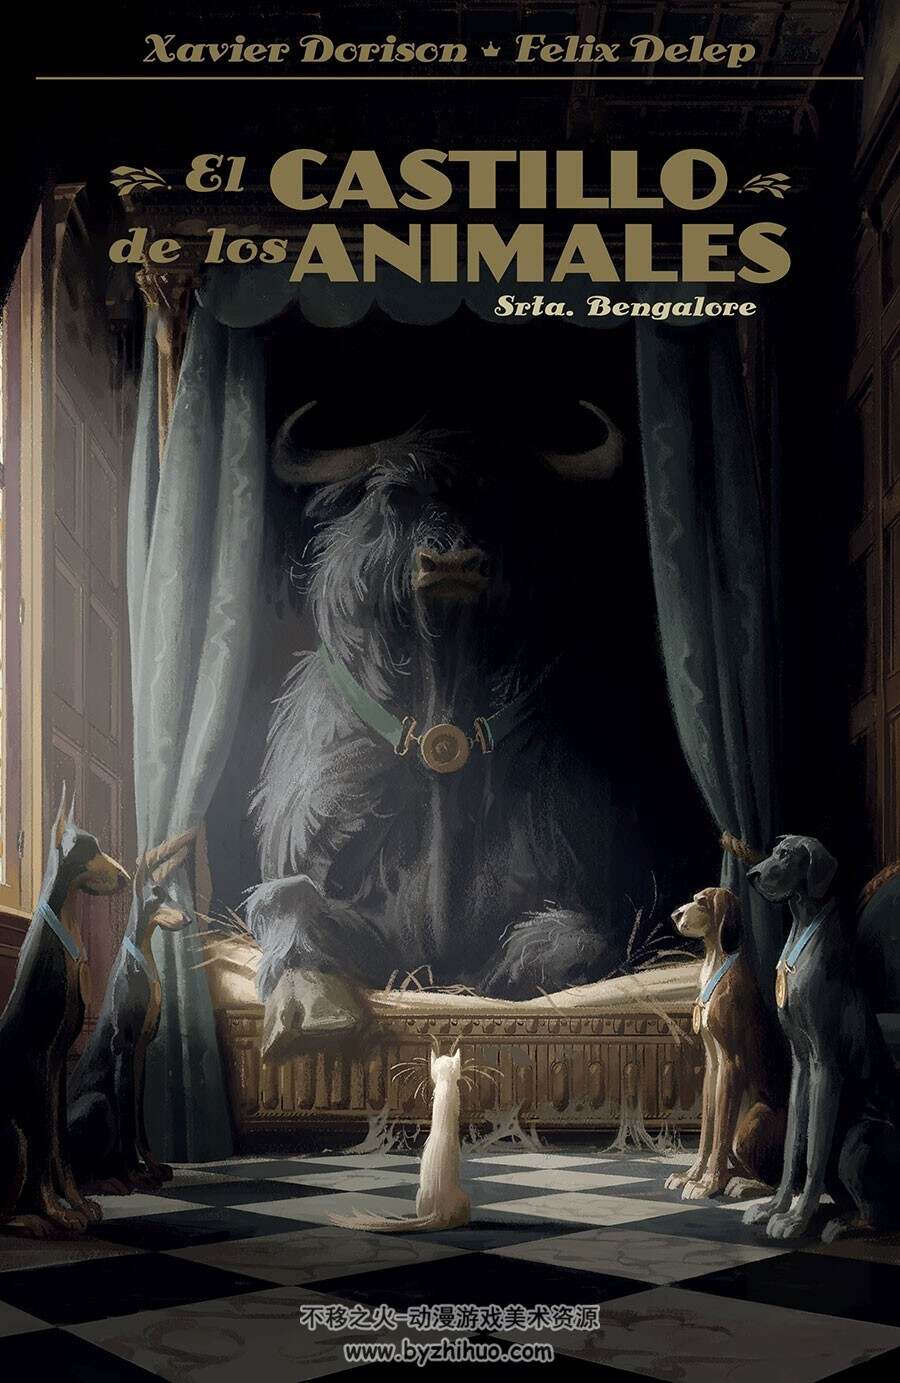 El Castillo de los Animales 第1册 Srta. Bengalore 漫画下载